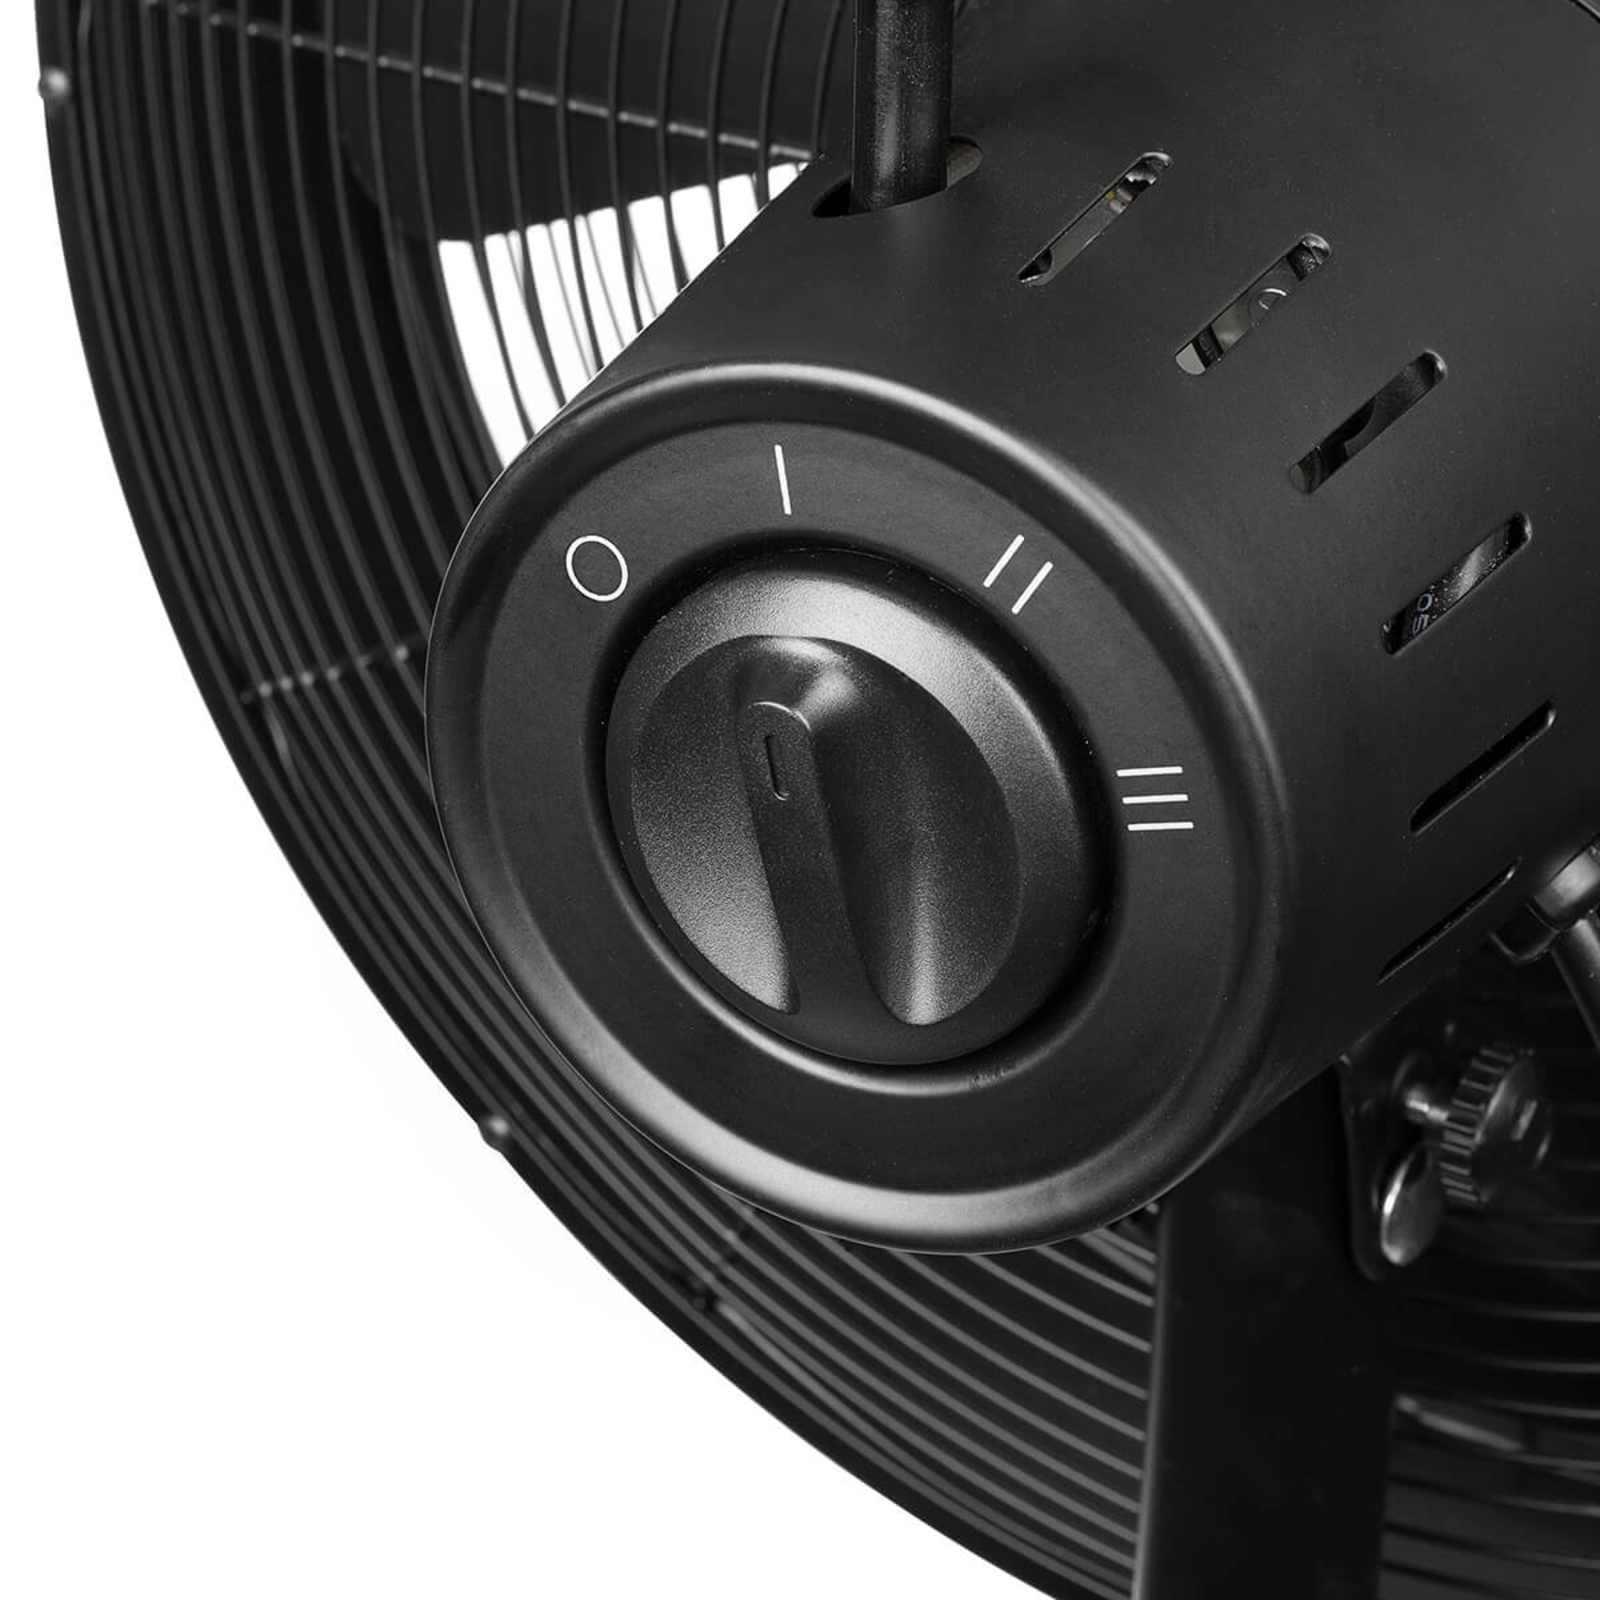 Moderno ventilador de pie VE5929 en negro